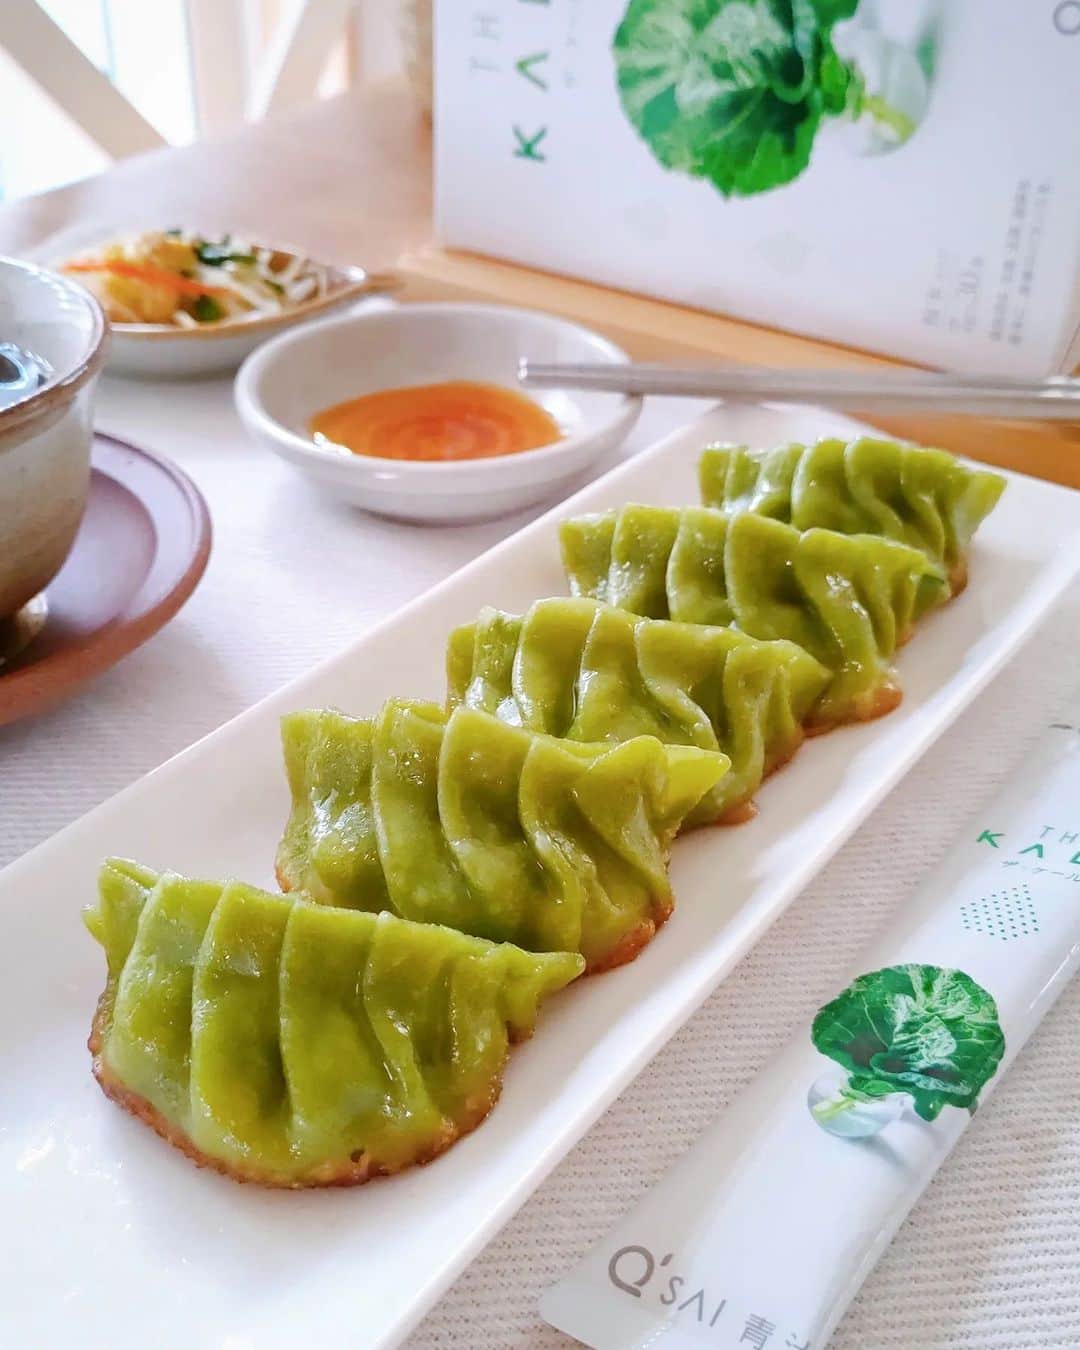 kyusai_kale_officialのインスタグラム：「餃子大好き！という方はコメントに「🥟」で教えてください！  「ザ・ケール」入りの自家製の皮でつくった焼き餃子🥟🥬  きれいな緑色が食欲をそそりますね！  これなら野菜が苦手なお子さまにもしっかり栄養を摂ってもらえそうですね🥰  休日に家族で一緒に作ってみるのも楽しいかも♬  Photo by @623nao.co.jp  --------------------------------------------------- キューサイ【ケール・青汁】公式アカウントです🥬  ケールを使ったオリジナルレシピやヘルス&ビューティーケア情報をお届けしています✨  キューサイのケールや青汁を使った際は #ザケール #キューサイ をつけて投稿してみてくださいね！ ご紹介させていただくかもしれません🎵  豪華キャンペーンが当たるキャンペーン開催中🎁 詳しくはピン留め投稿をチェック✨ --------------------------------------------------- #キューサイ #qsai #ケール #ケールワーク #スーパーフード #kale #青汁 #健康生活 #ウェルエイジング #セルフケア #青汁レシピ #健康レシピ #健康ごはん #アレンジレシピ #ヘルシーレシピ #ヘルシーごはん #ヘルシー生活 #簡単レシピ #簡単おやつ #からだにやさしいごはん #丁寧な暮らし #料理好きな人と繋がりたい #美容好きな人と繋がりたい #健康的な食事 #手作り餃子 #餃子好き #今日の献立 #子どもと一緒に」